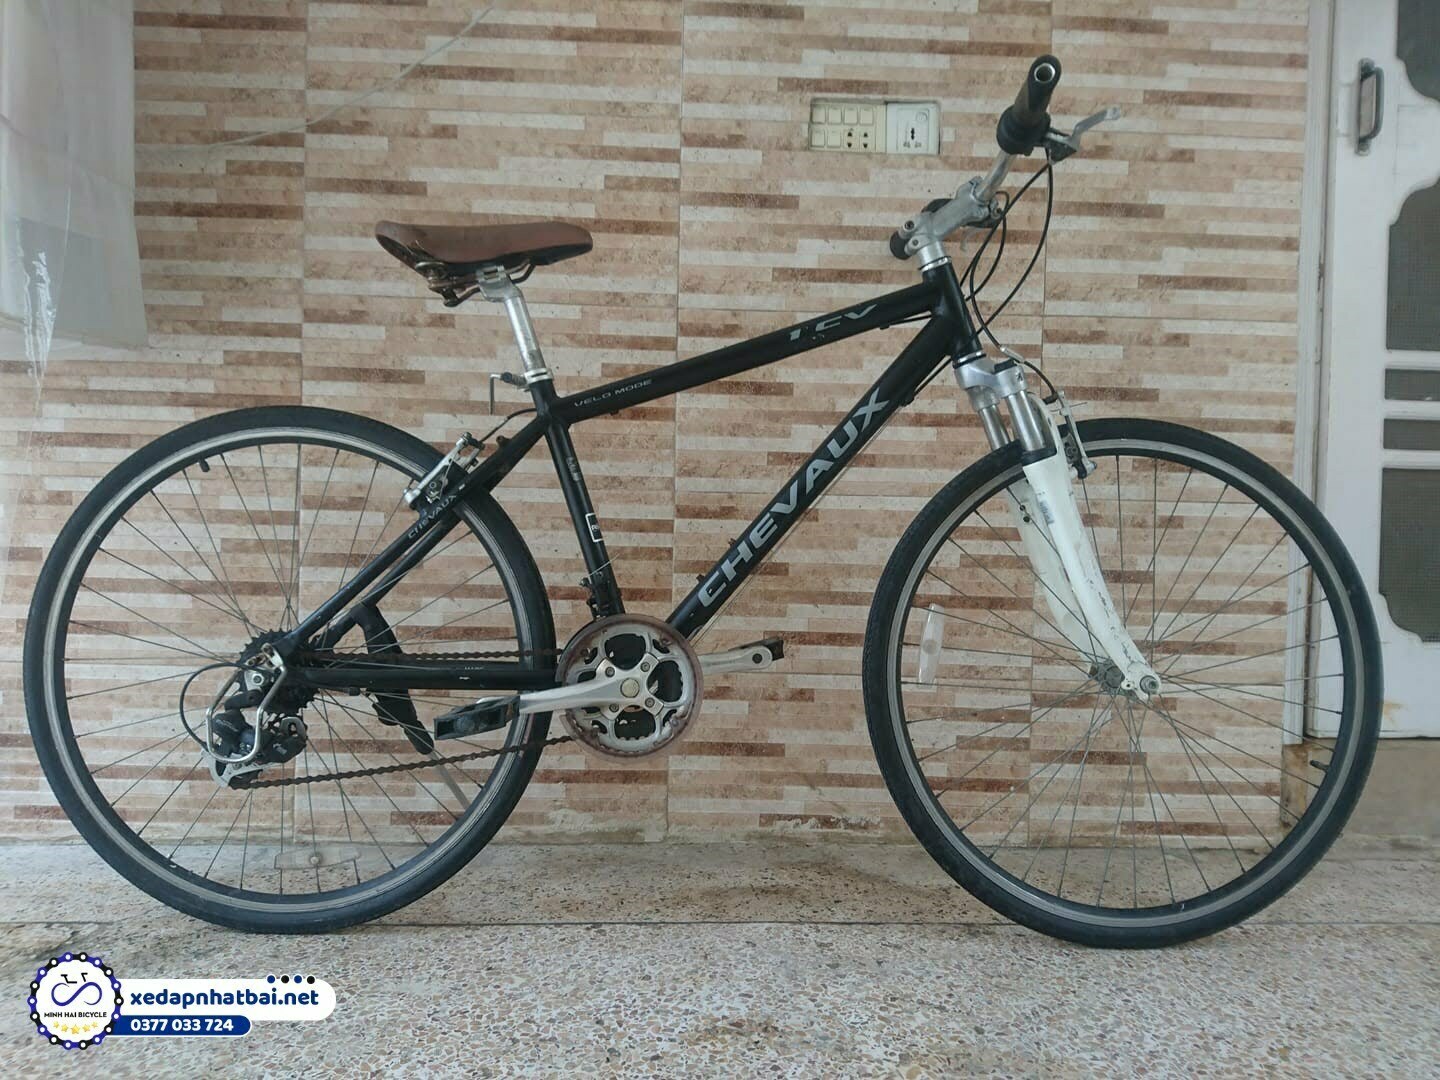 Xe đạp thương hiệu Chevaux Nhật Bãi thường sử dụng lốp không săm của Maruishi